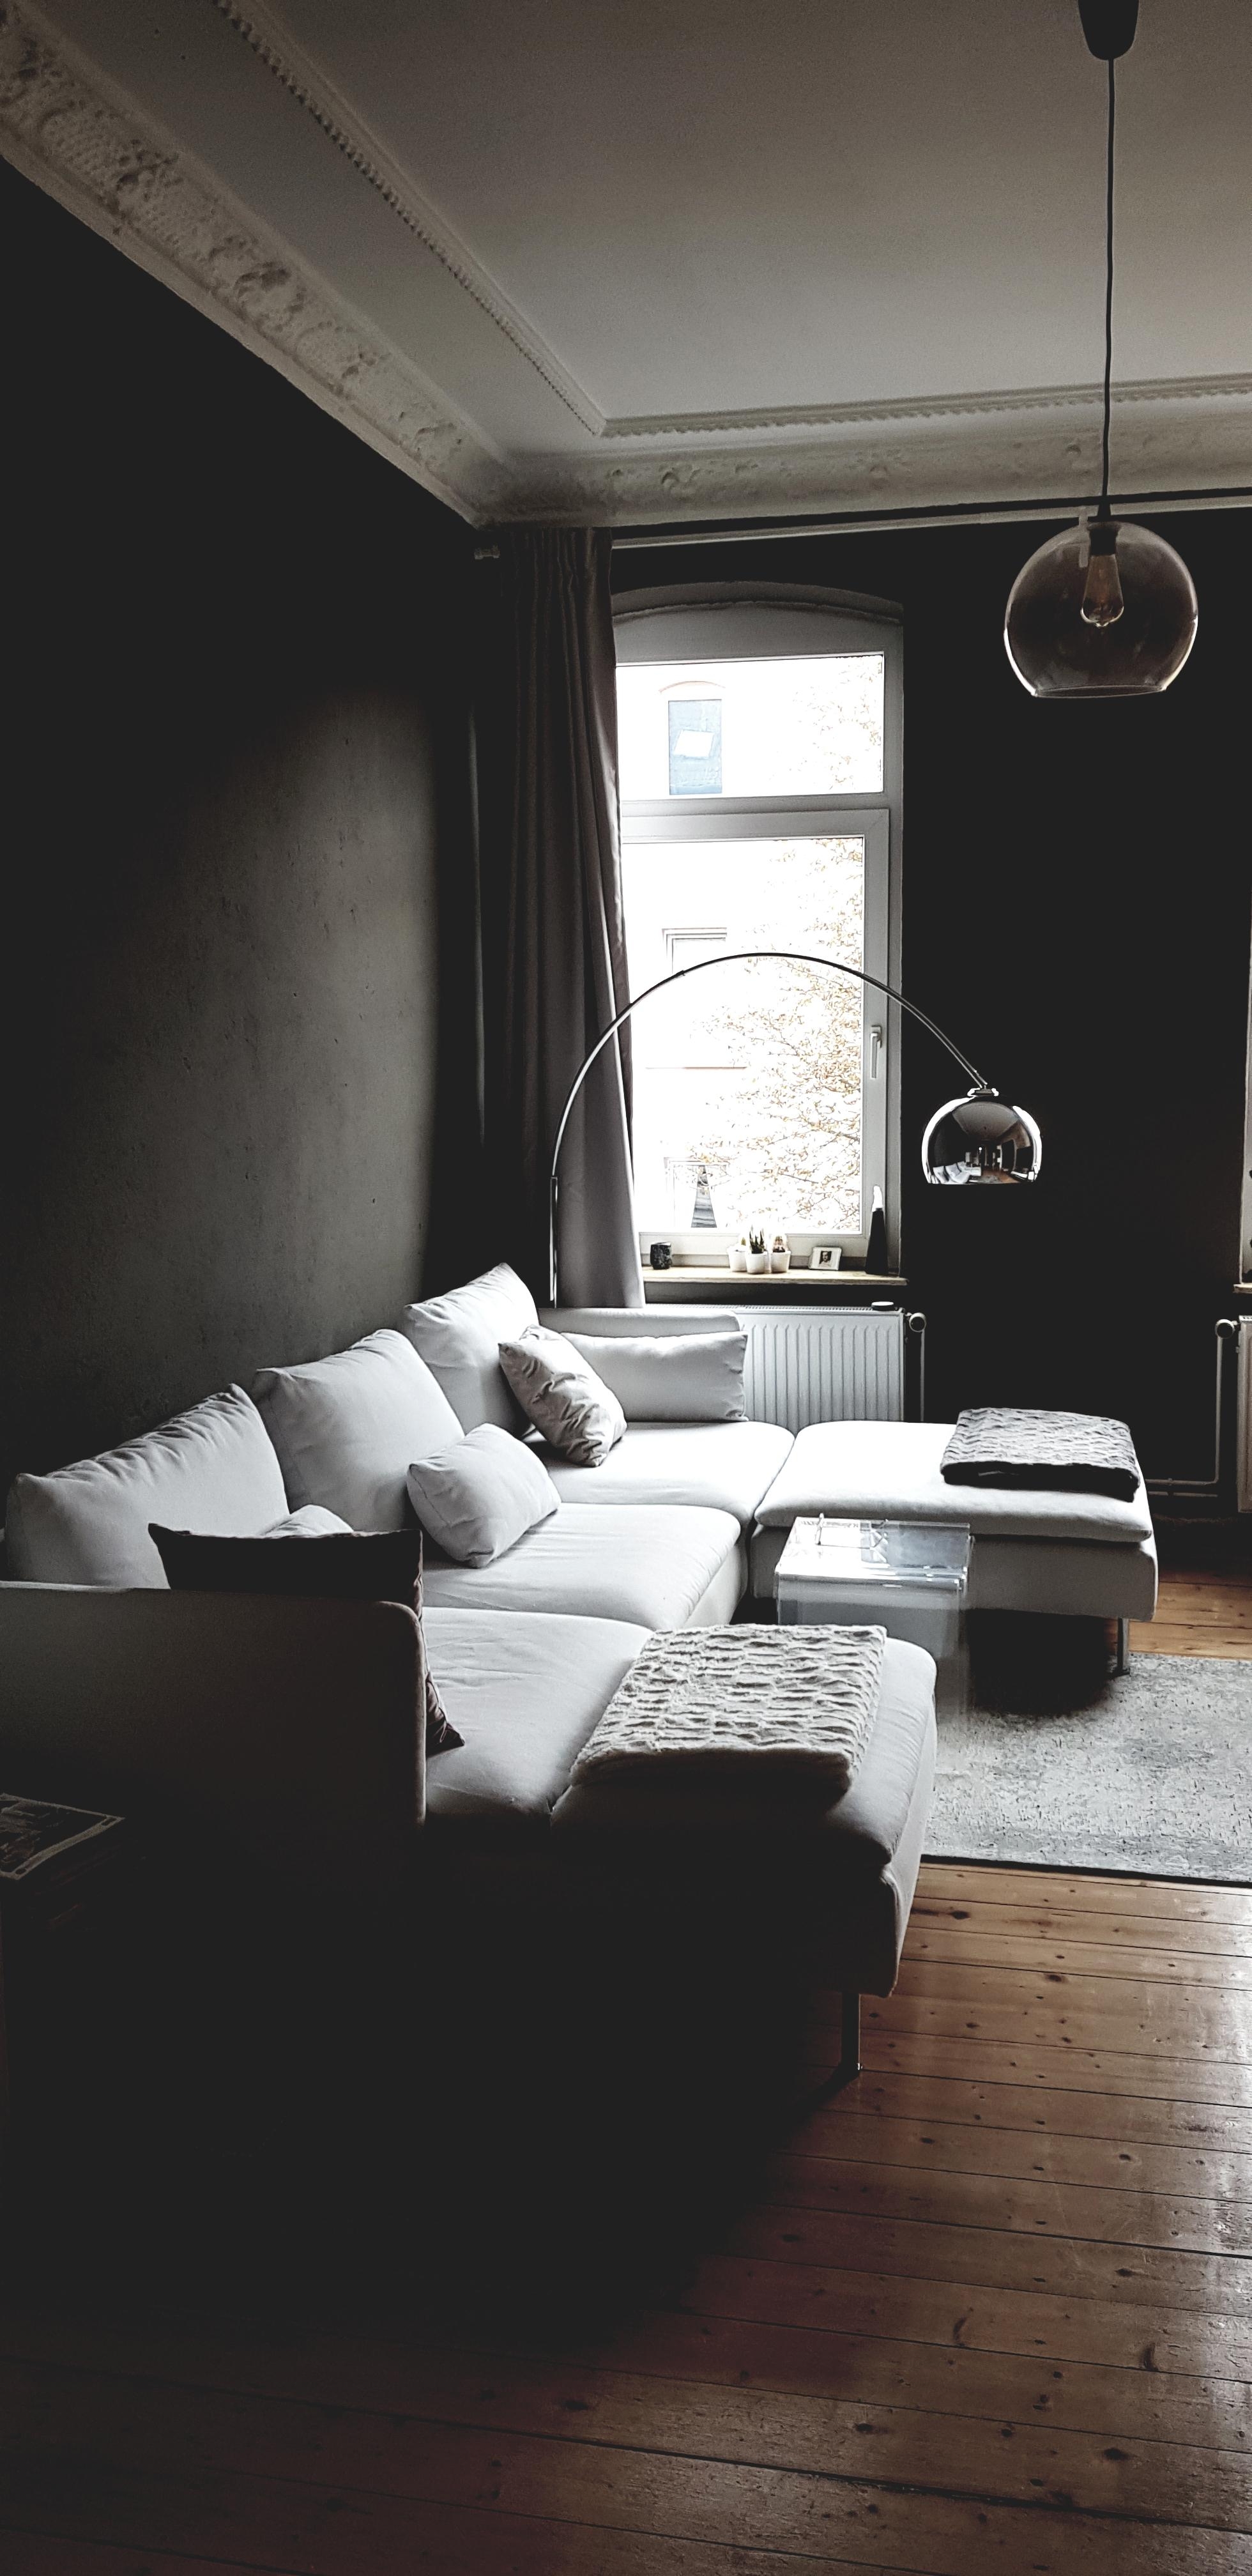 #Wohnzimmer #livingchallenge #lieblingsplatz #grau #altbau #altbauliebe